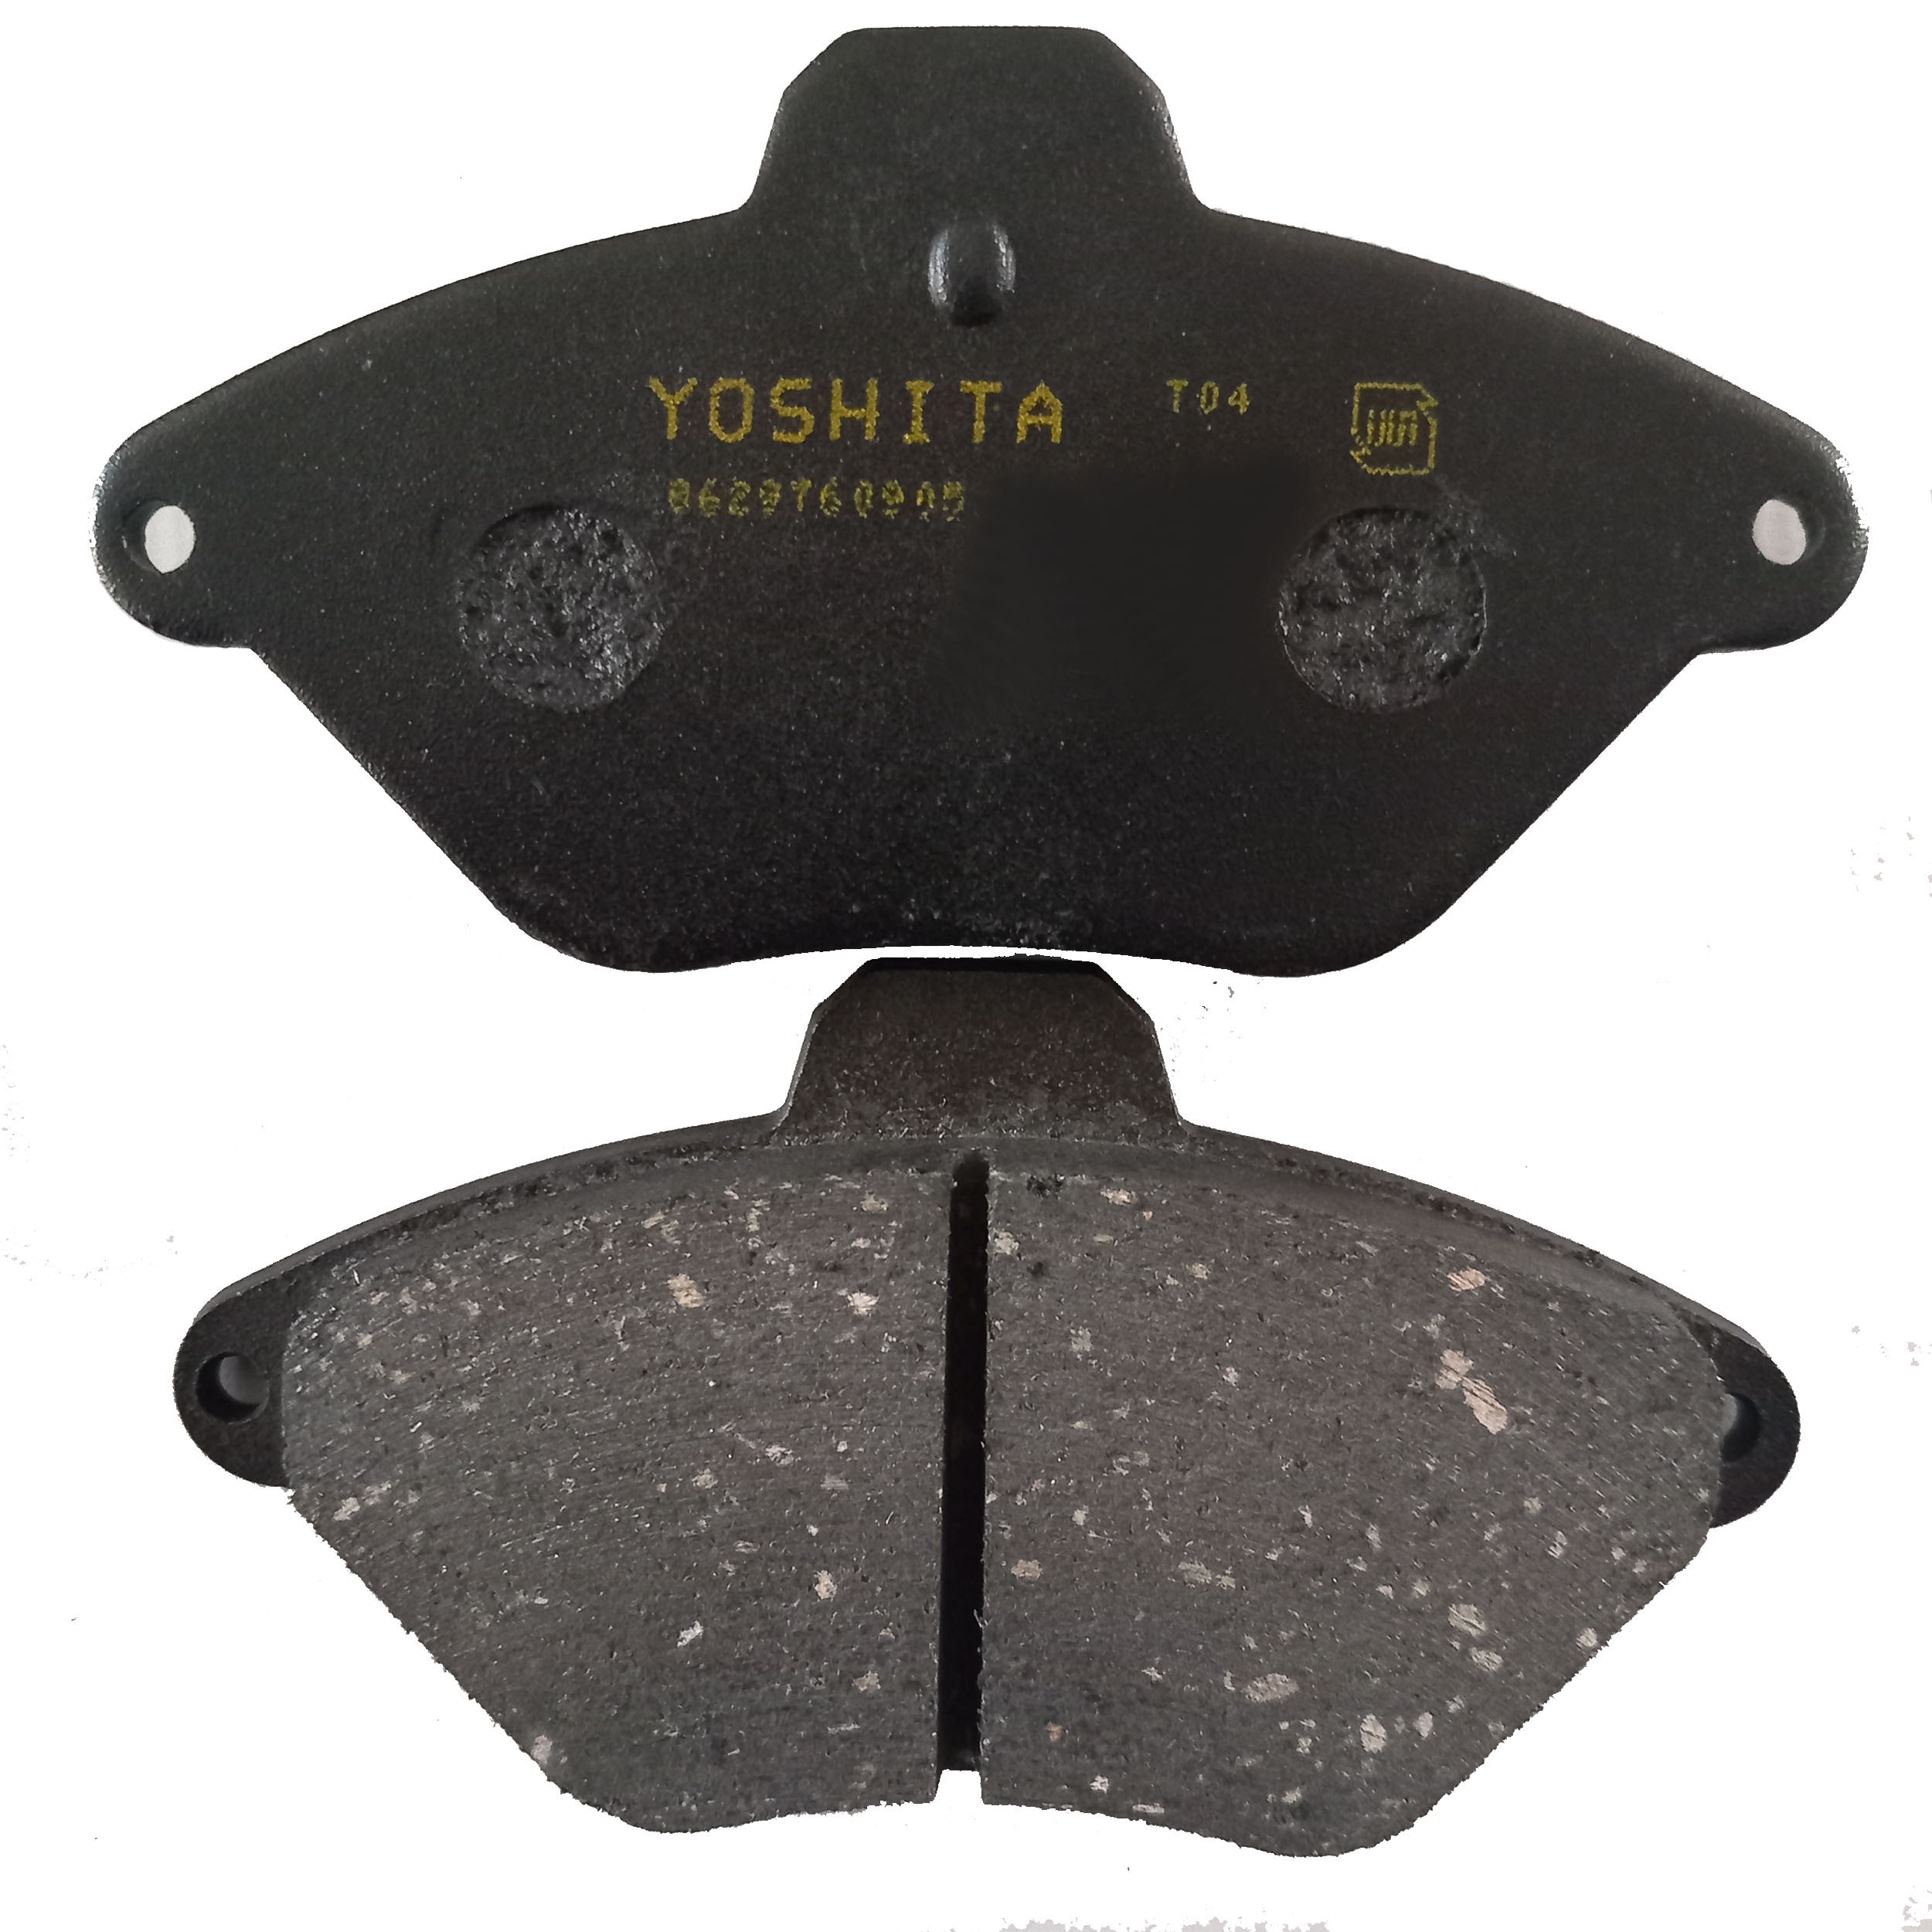 لنت ترمز جلو یوشیتا مدل 0110 مناسب برای زانتیا 2000